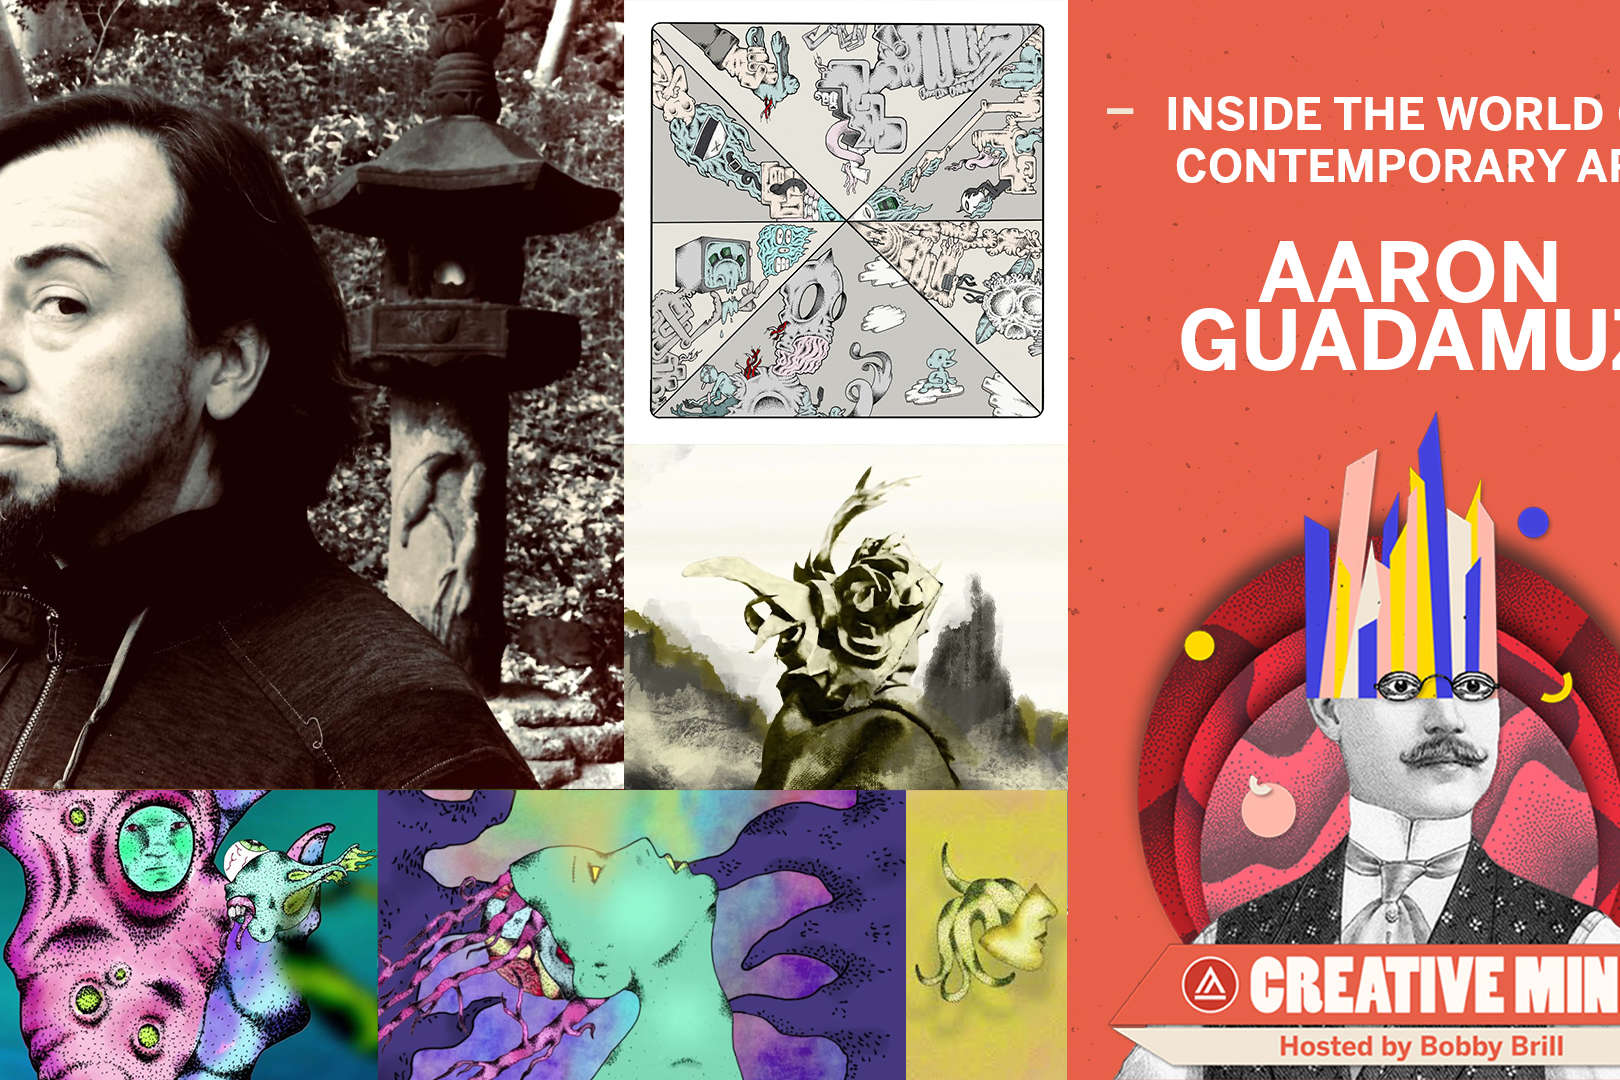 Creative Mind Podcast: Aaron Guadamuz